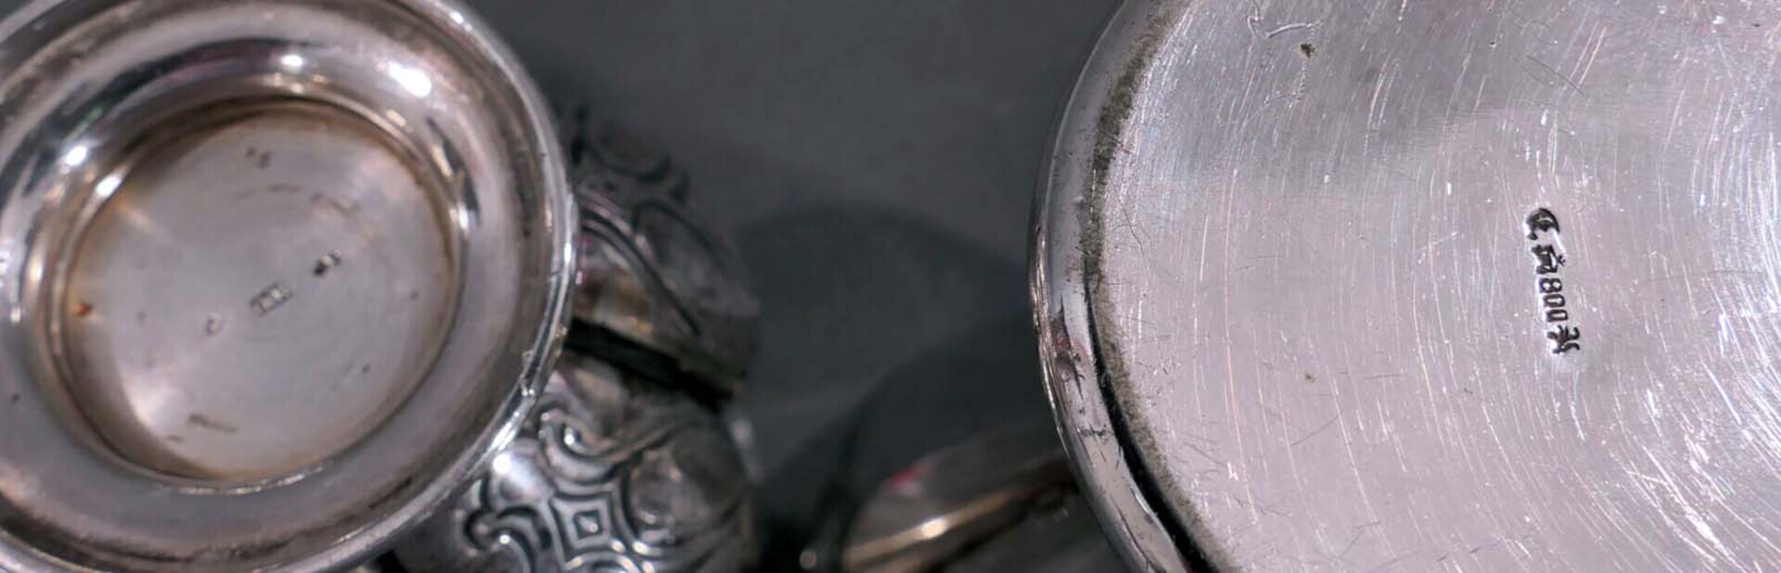 3 tlg. Konvolut versch. Gefäße aus Adelsbesitz, bestehend aus 2 Bechern aus 800er Silber & 1 Tischv - Image 5 of 5